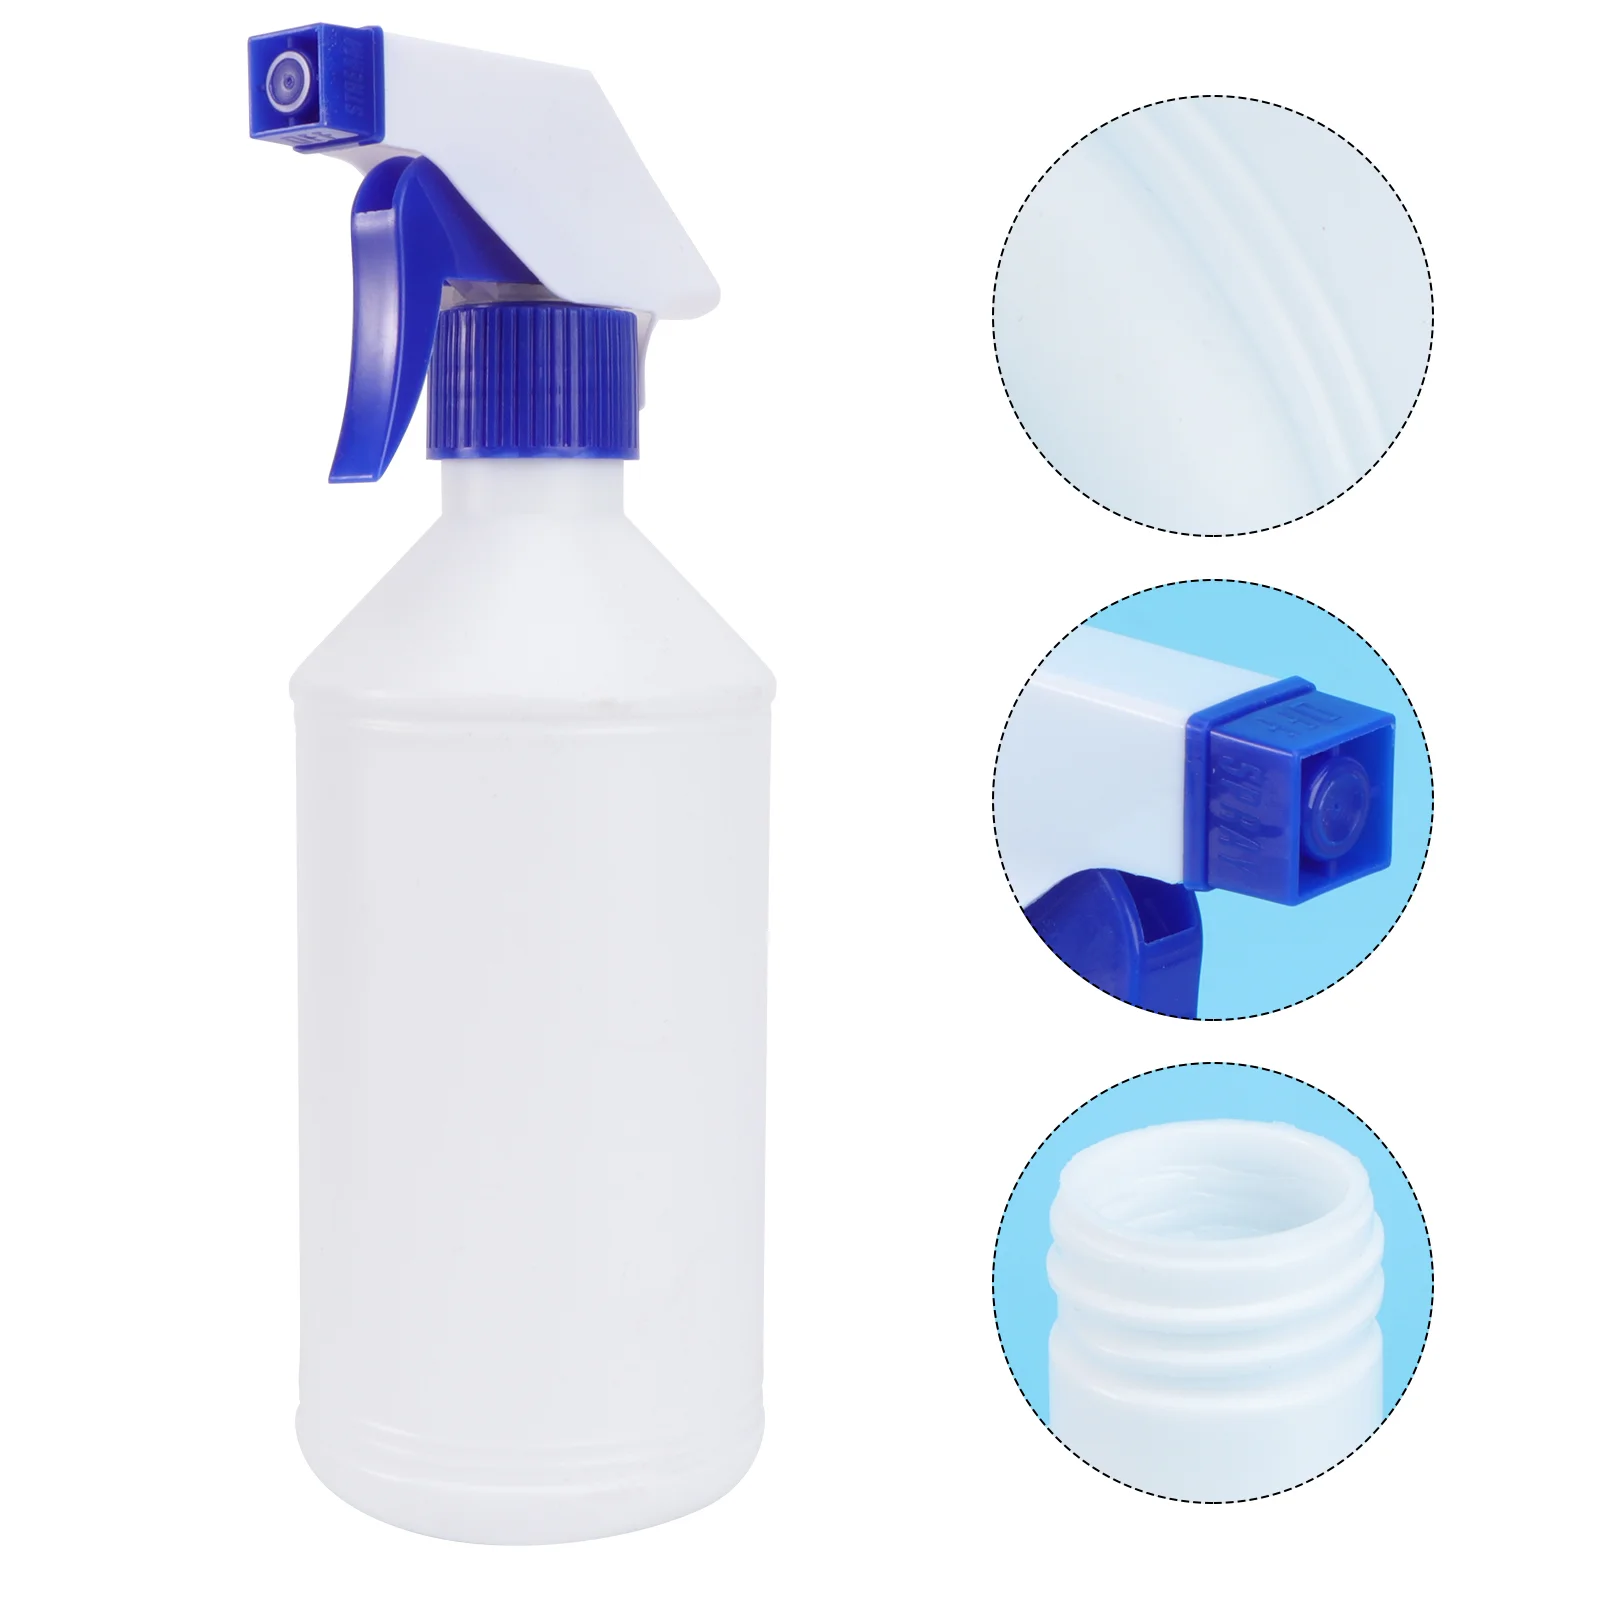 

Bottle Spray Water Refillable Container Sprayer Pump Bottles Gardening Mist Perfume Empty Liquid